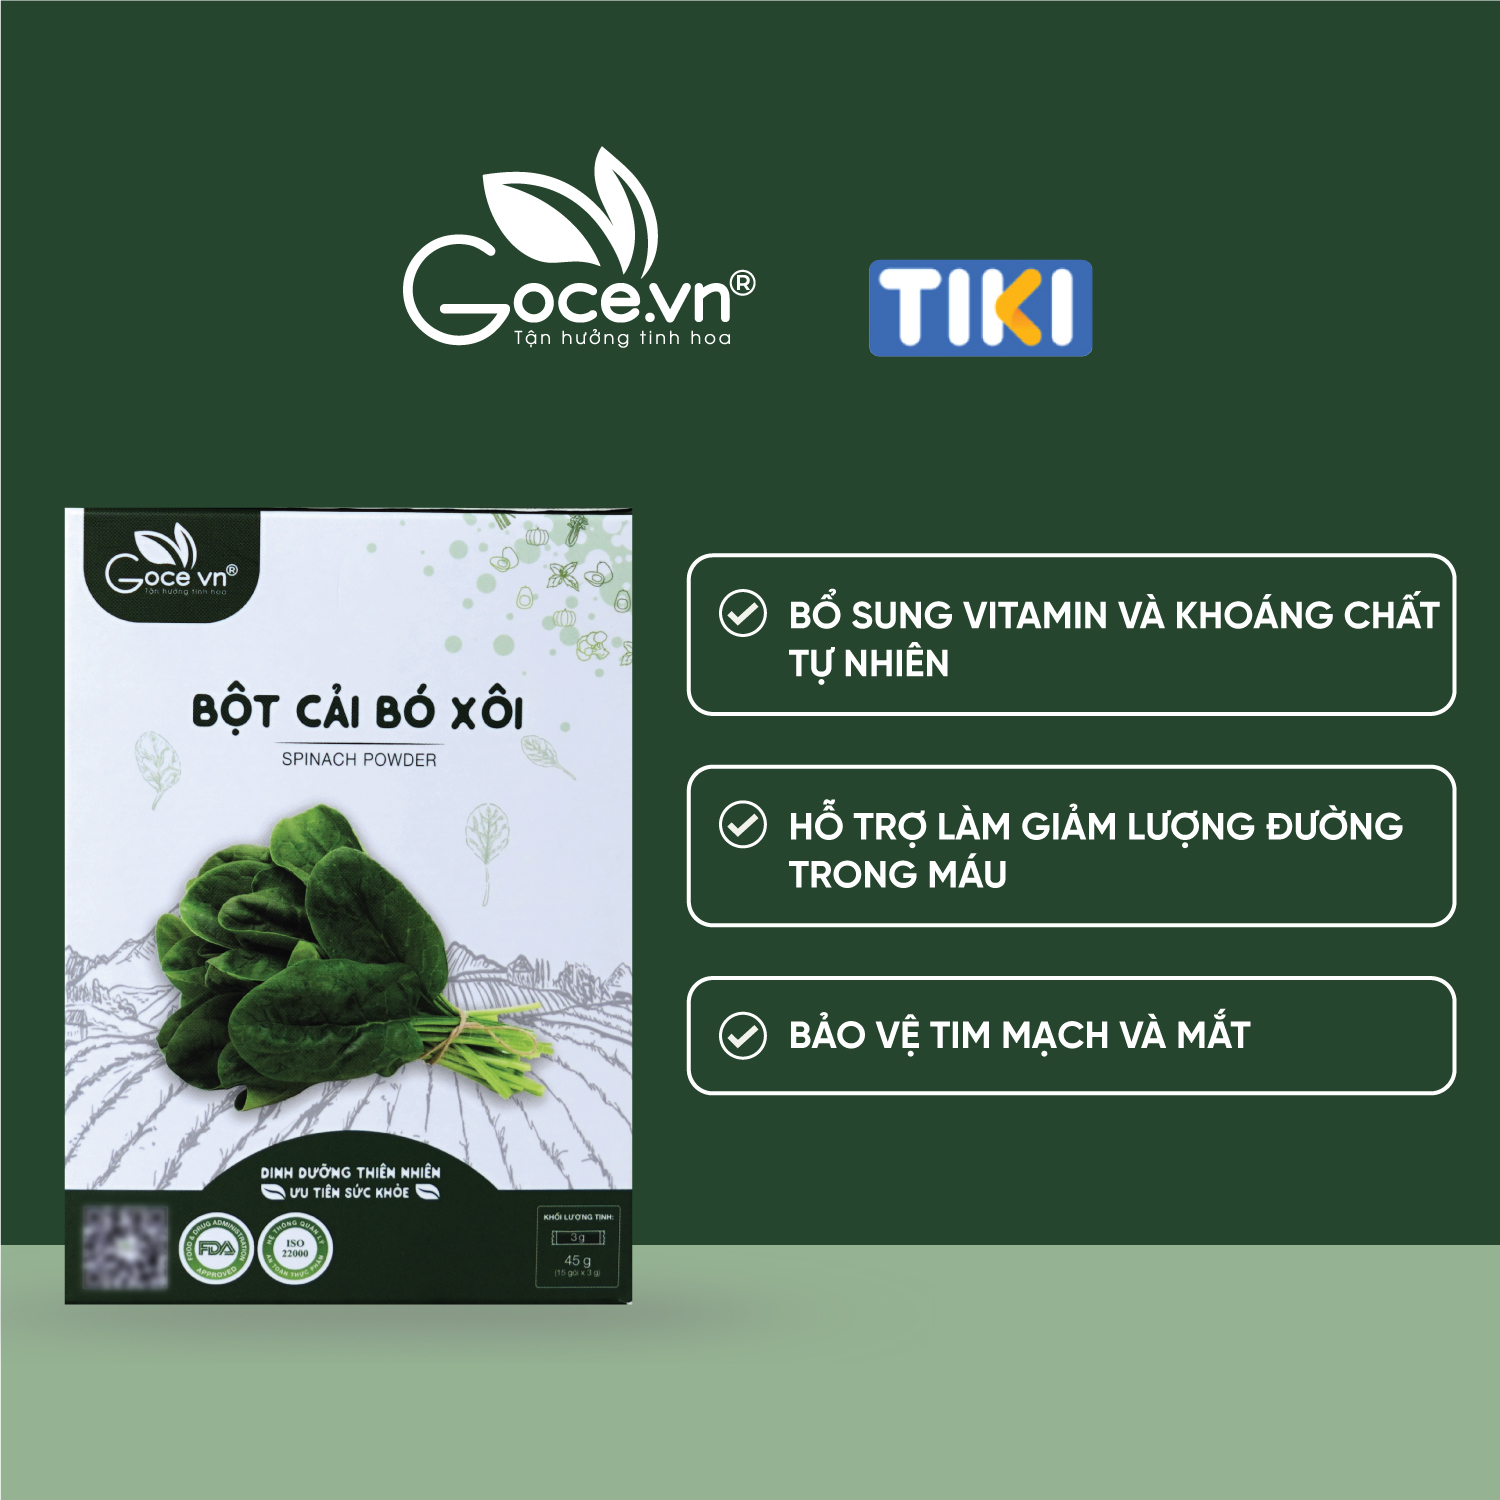 Bột cải bó xôi nguyên chất Goce (Rau Bina) - 45g (15 gói x 3g) ST